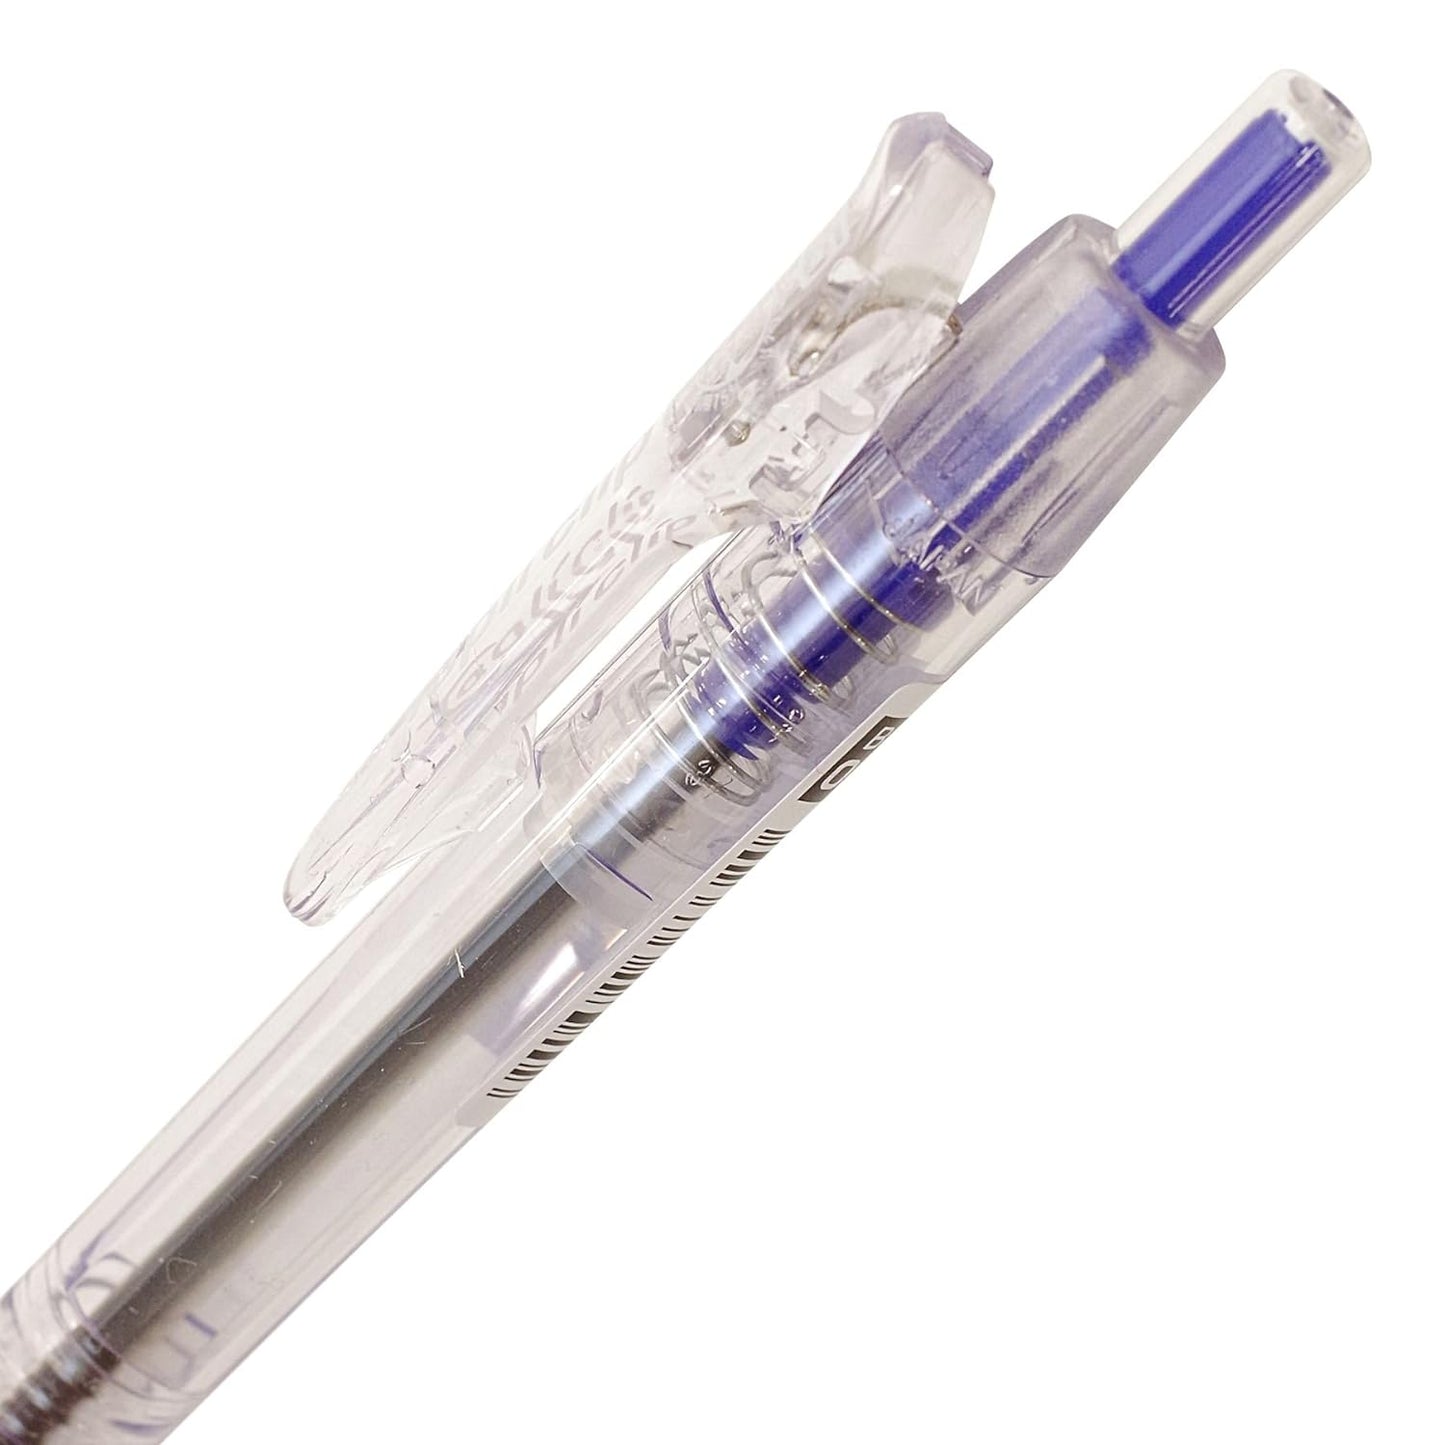 Zebra Tapli Clip 0.7mm Oil-Based Ballpoint Pen